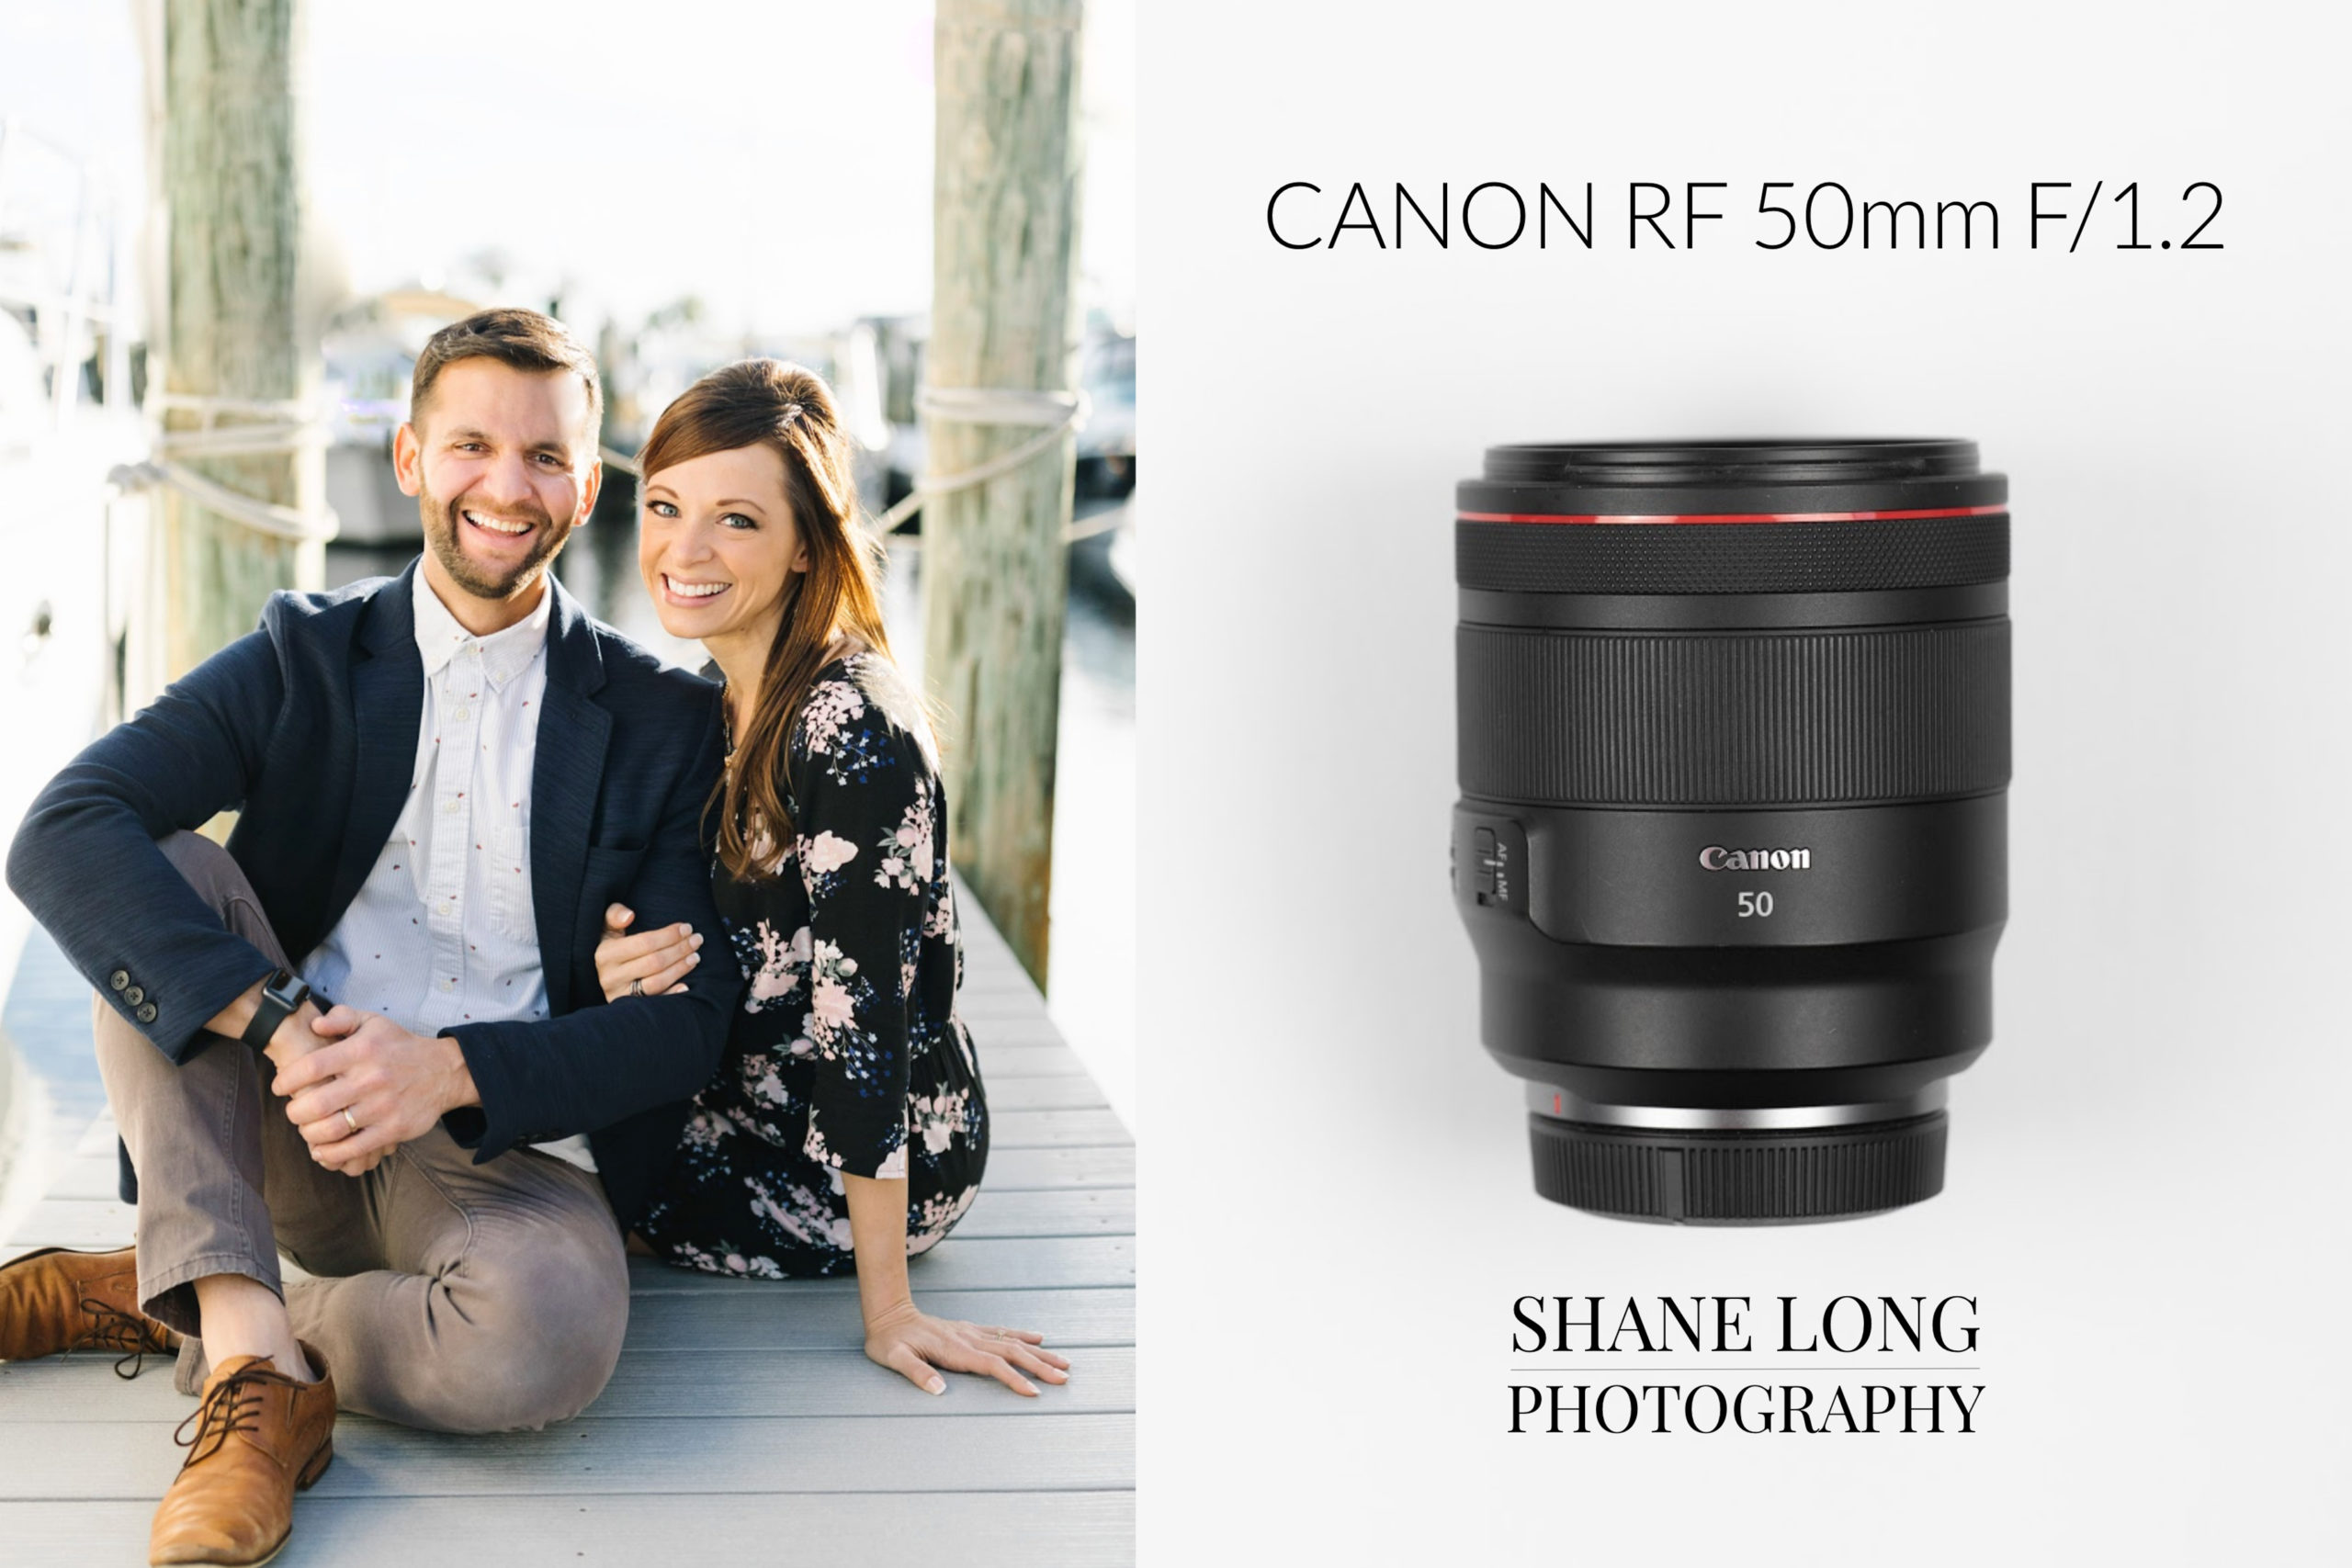 Canon RF 50mm f/1.2L USM là một trong những ống kính chuyên nghiệp được đánh giá cao trong ngành nhiếp ảnh. Sự sắc nét và độ chi tiết của ống kính sẽ giúp bạn tạo ra những bức ảnh độc đáo và chất lượng cao. 